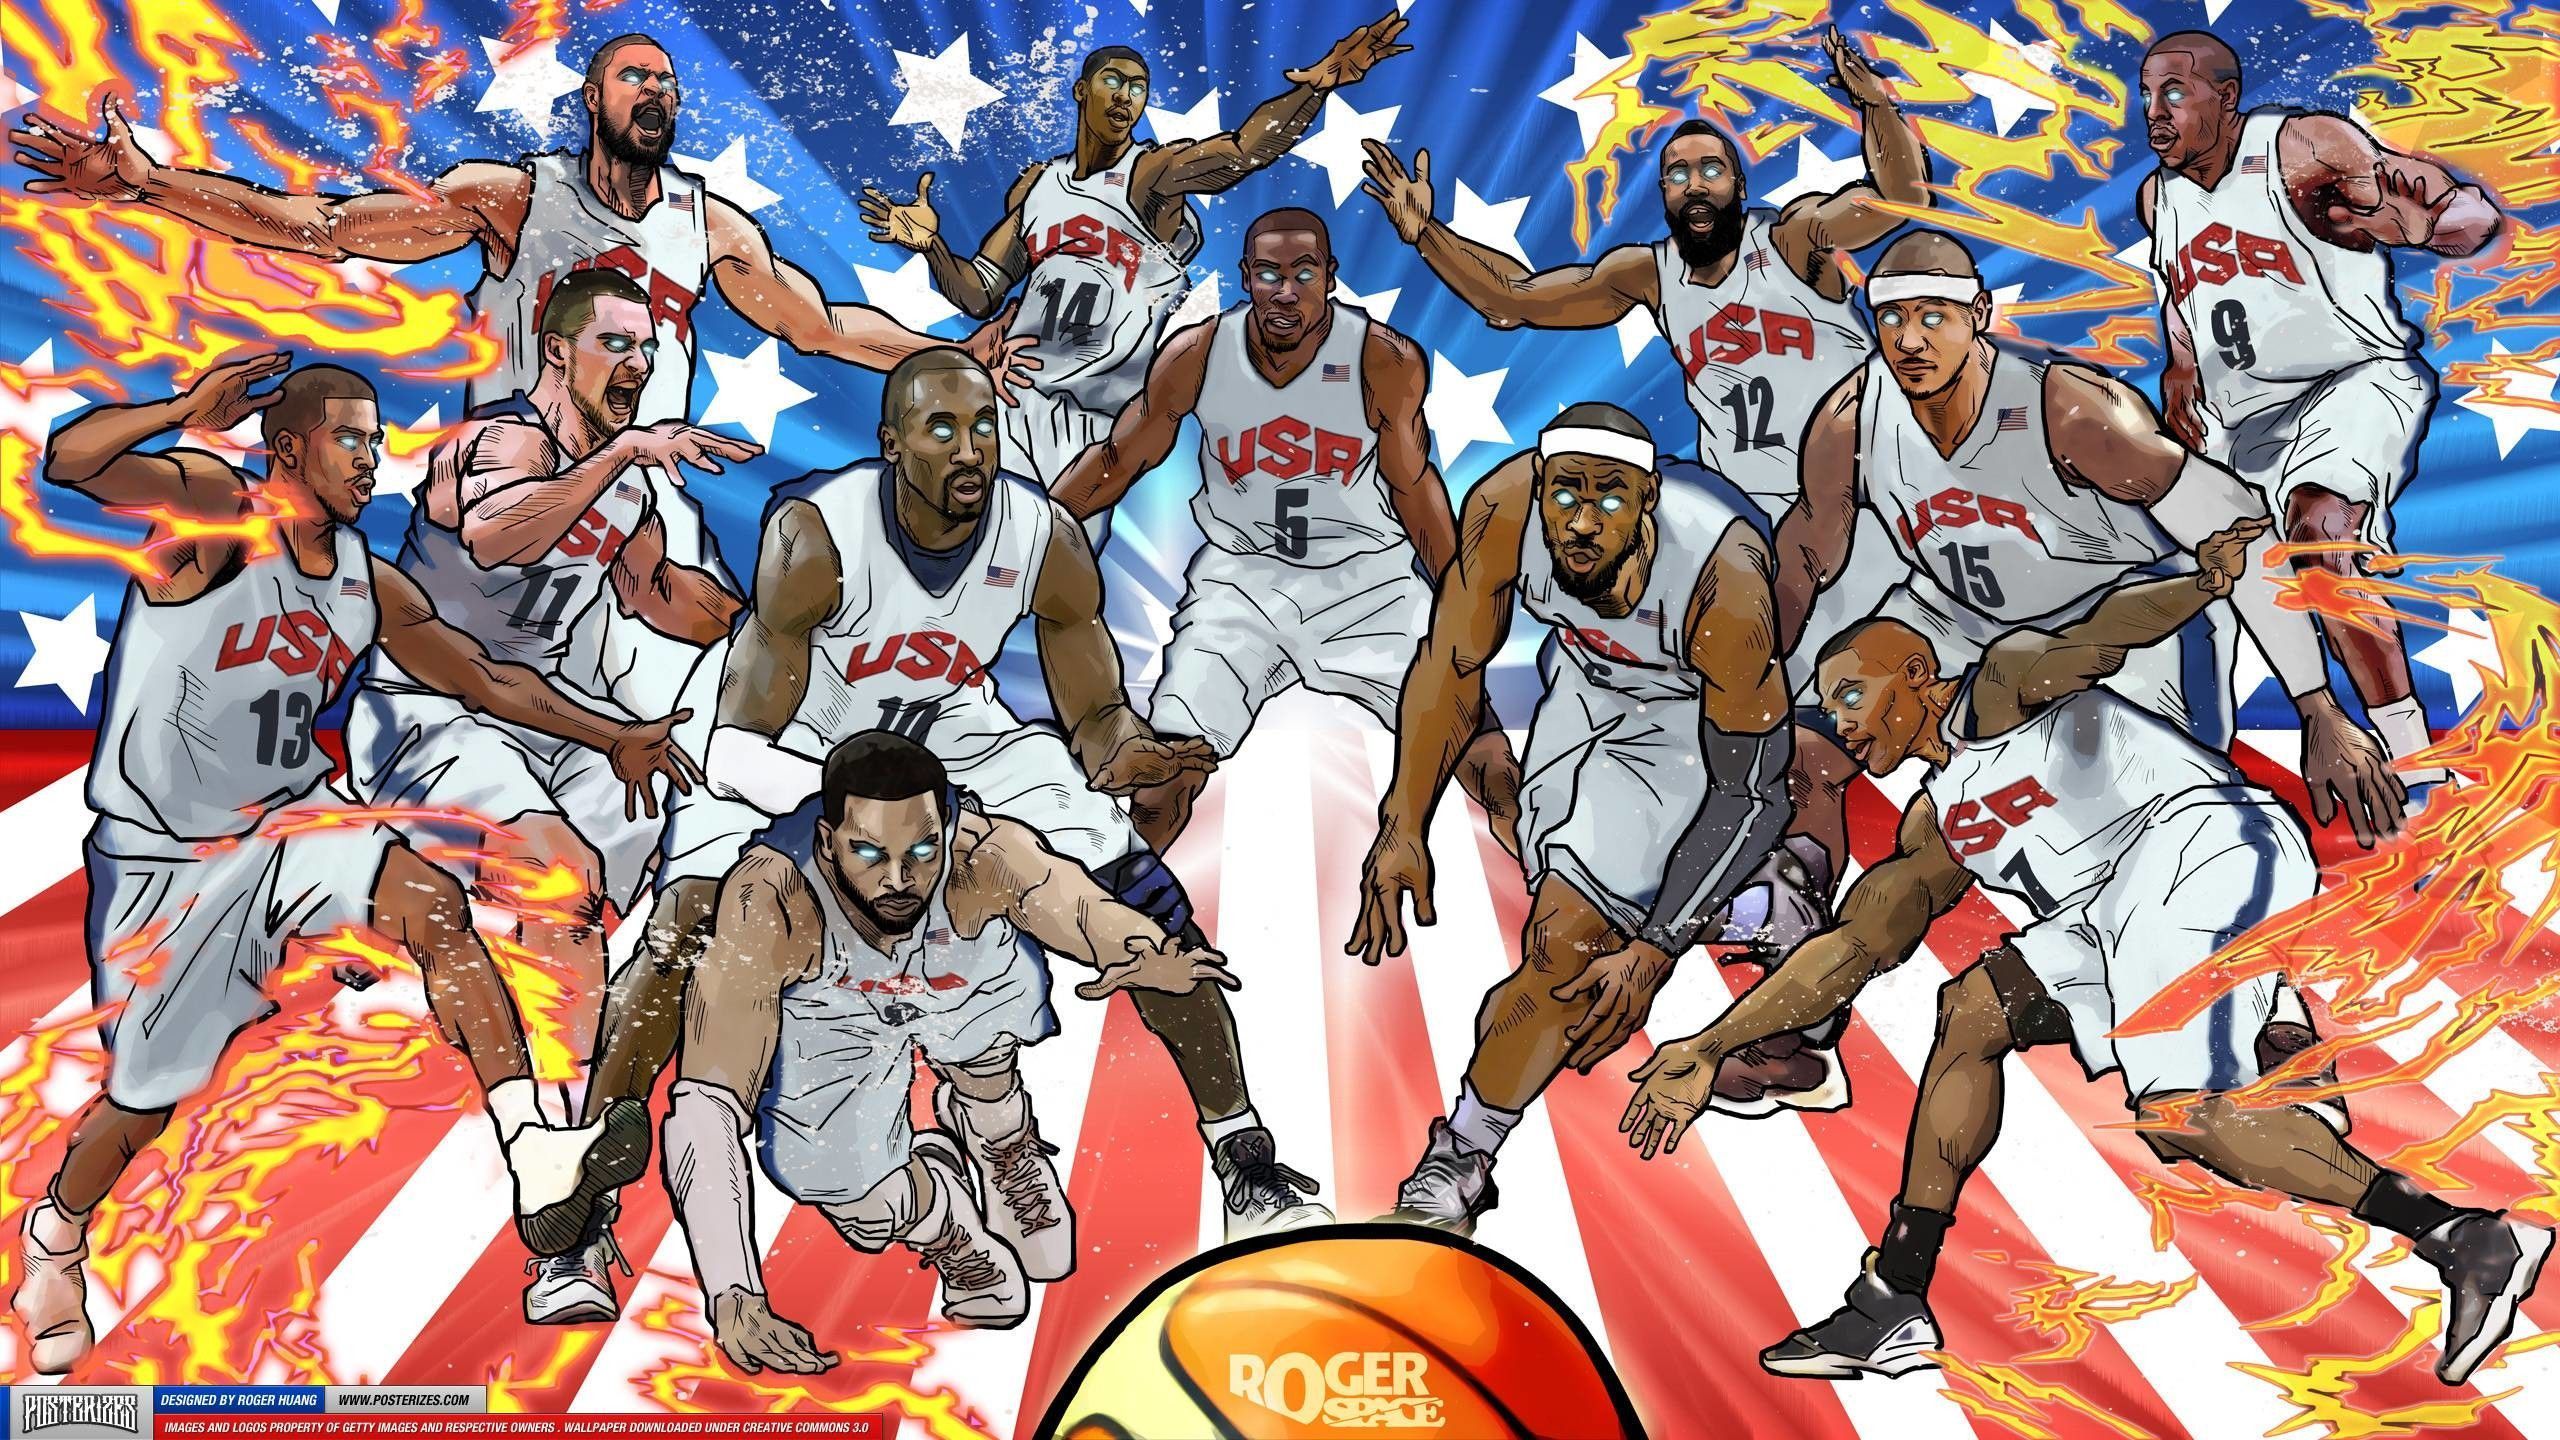 USA Basketball Wallpaper Free USA Basketball Background